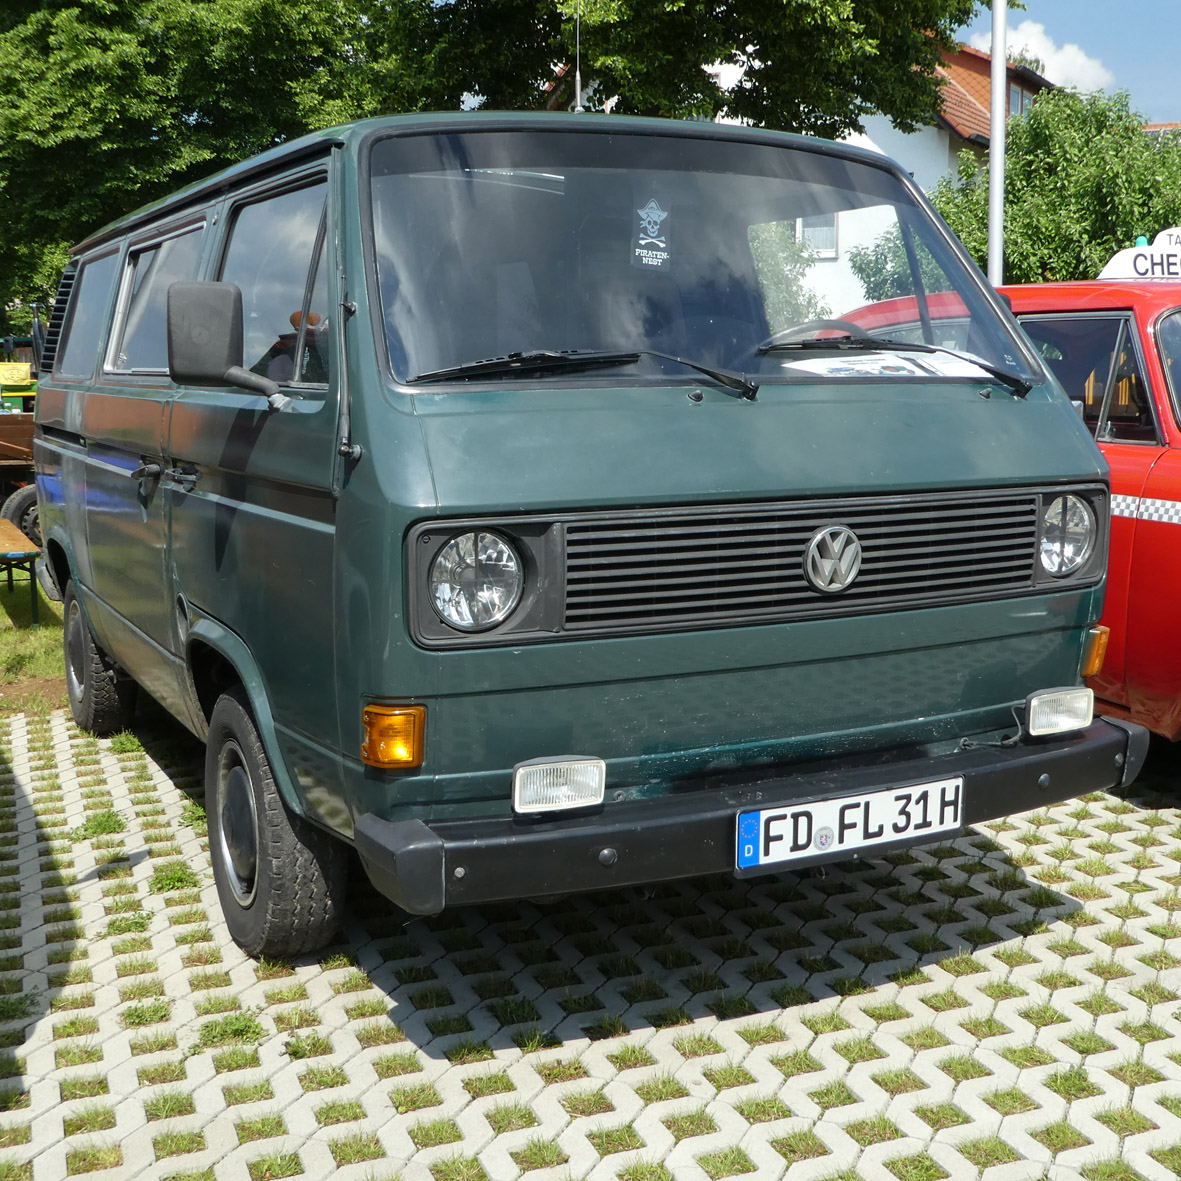 VW T3 (ehemaliges Dienst-Kfz. des BGS), gesehen bei der Oldtimerveranstaltung in Fulda-Harmerz im Juni 2016